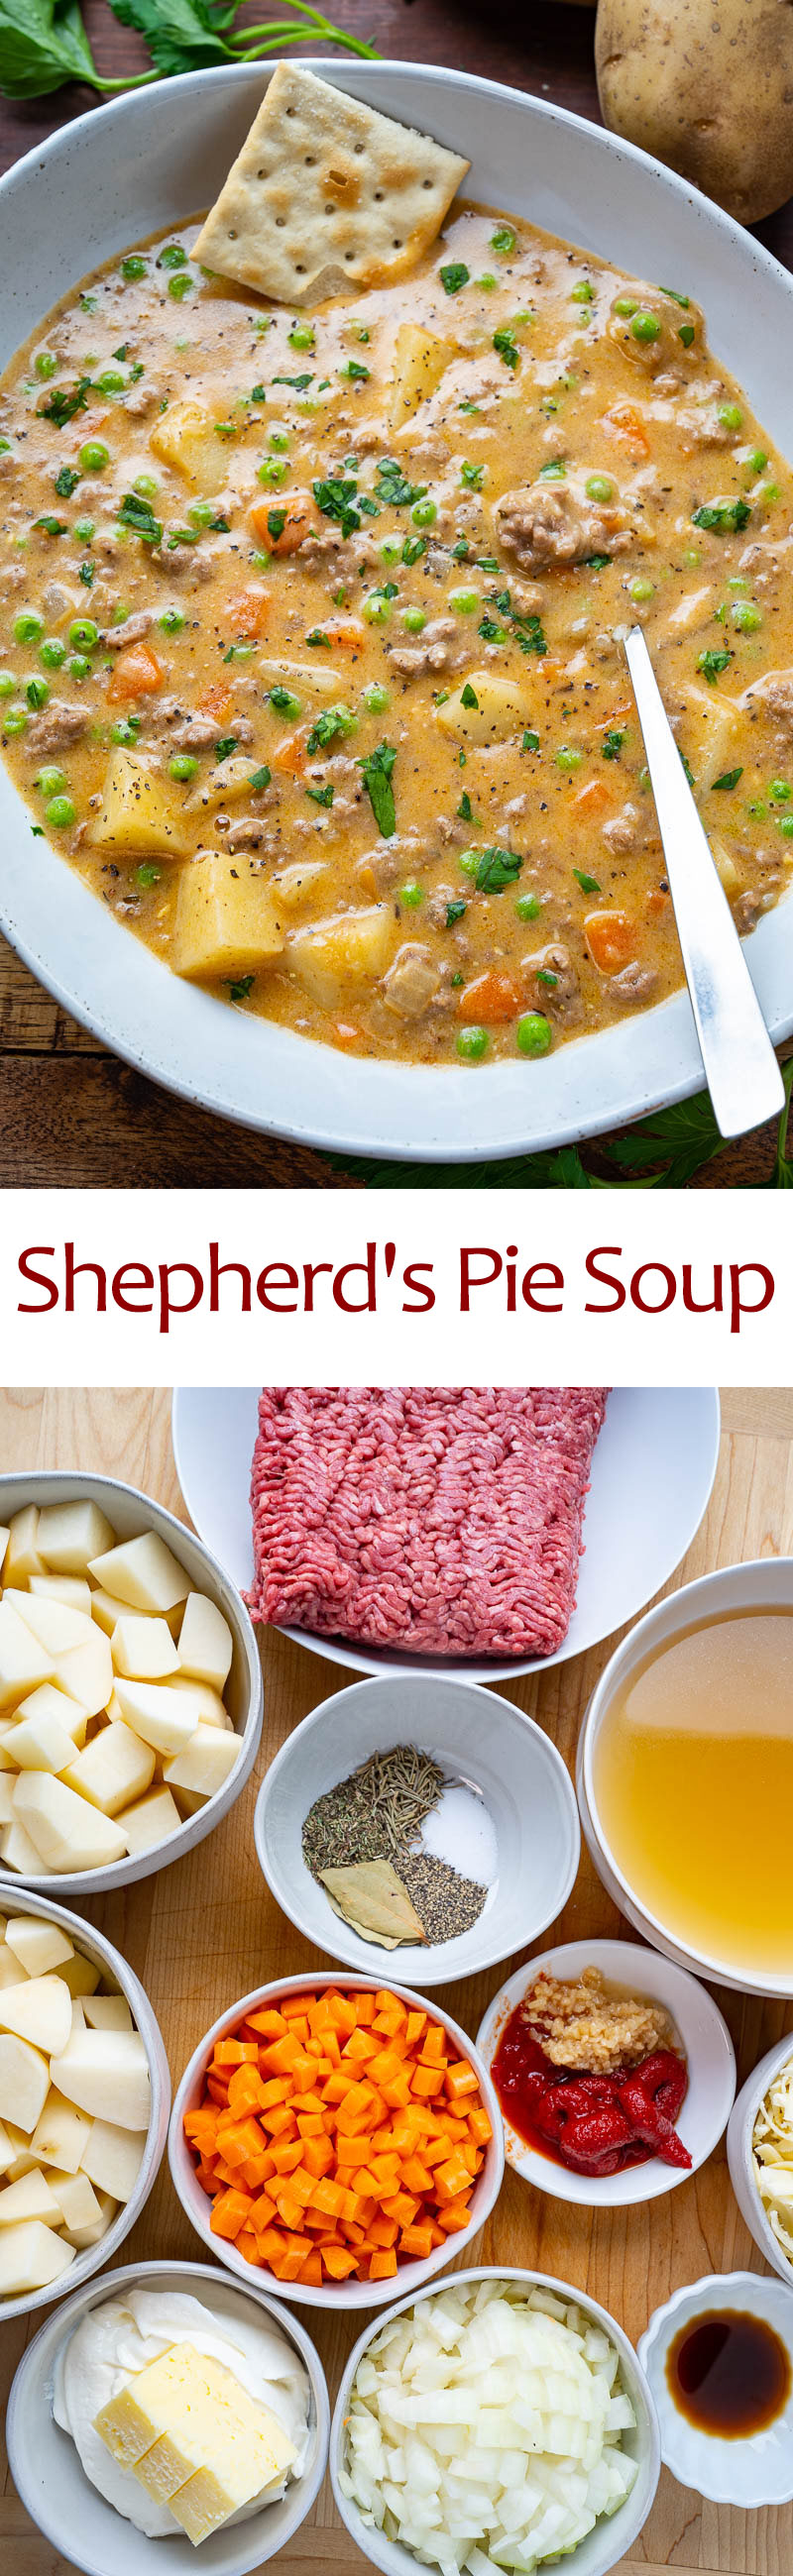 Shepherd's Pie Soup